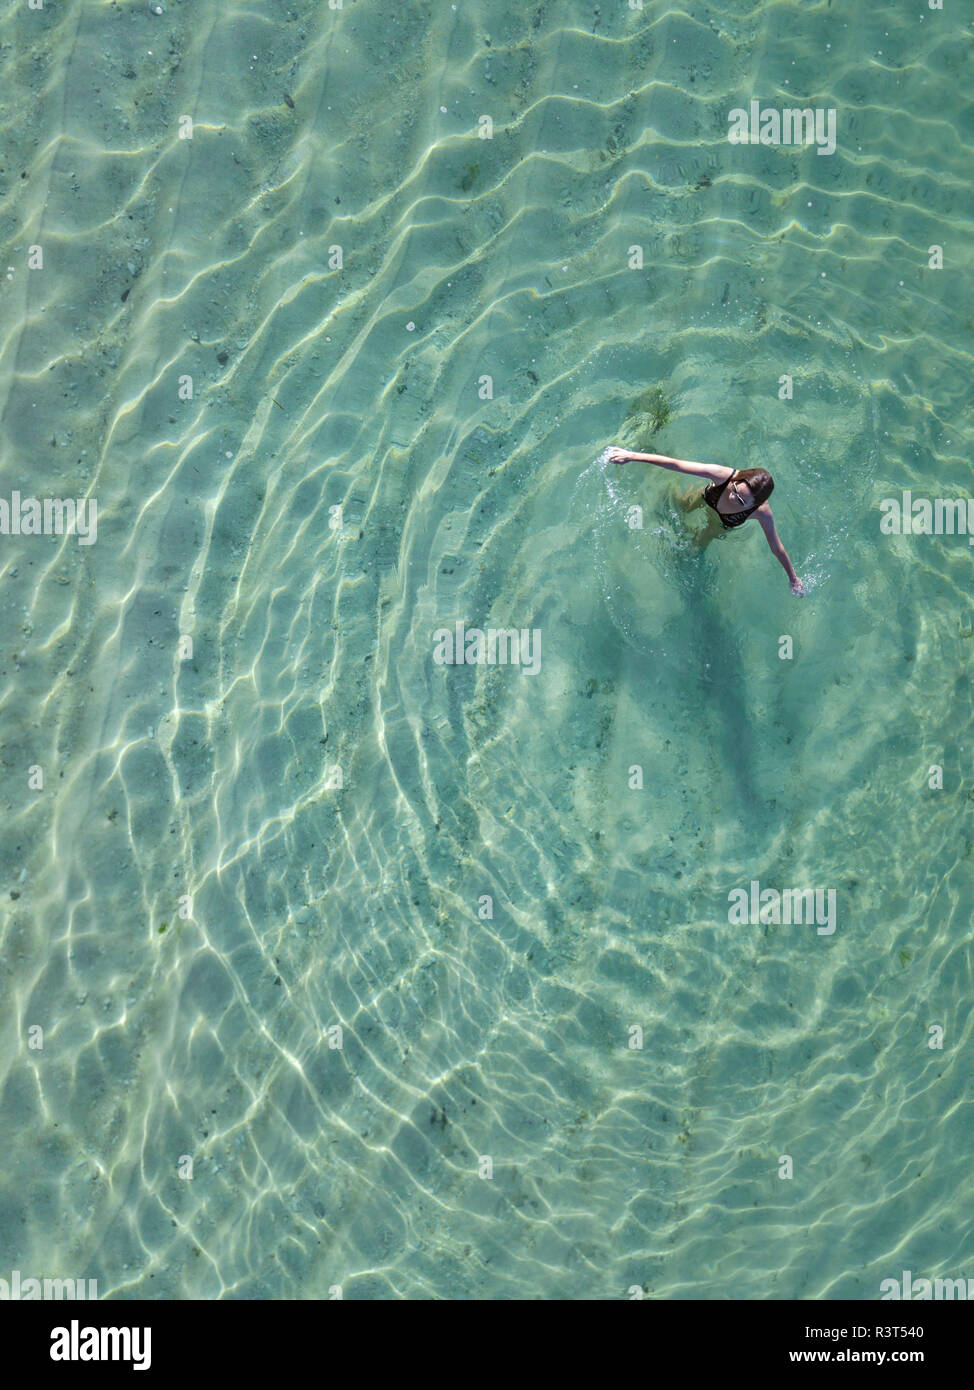 Indonesia, Bali, Melasti, vista aerea del Karma Kandara beach, una donna in acqua Foto Stock